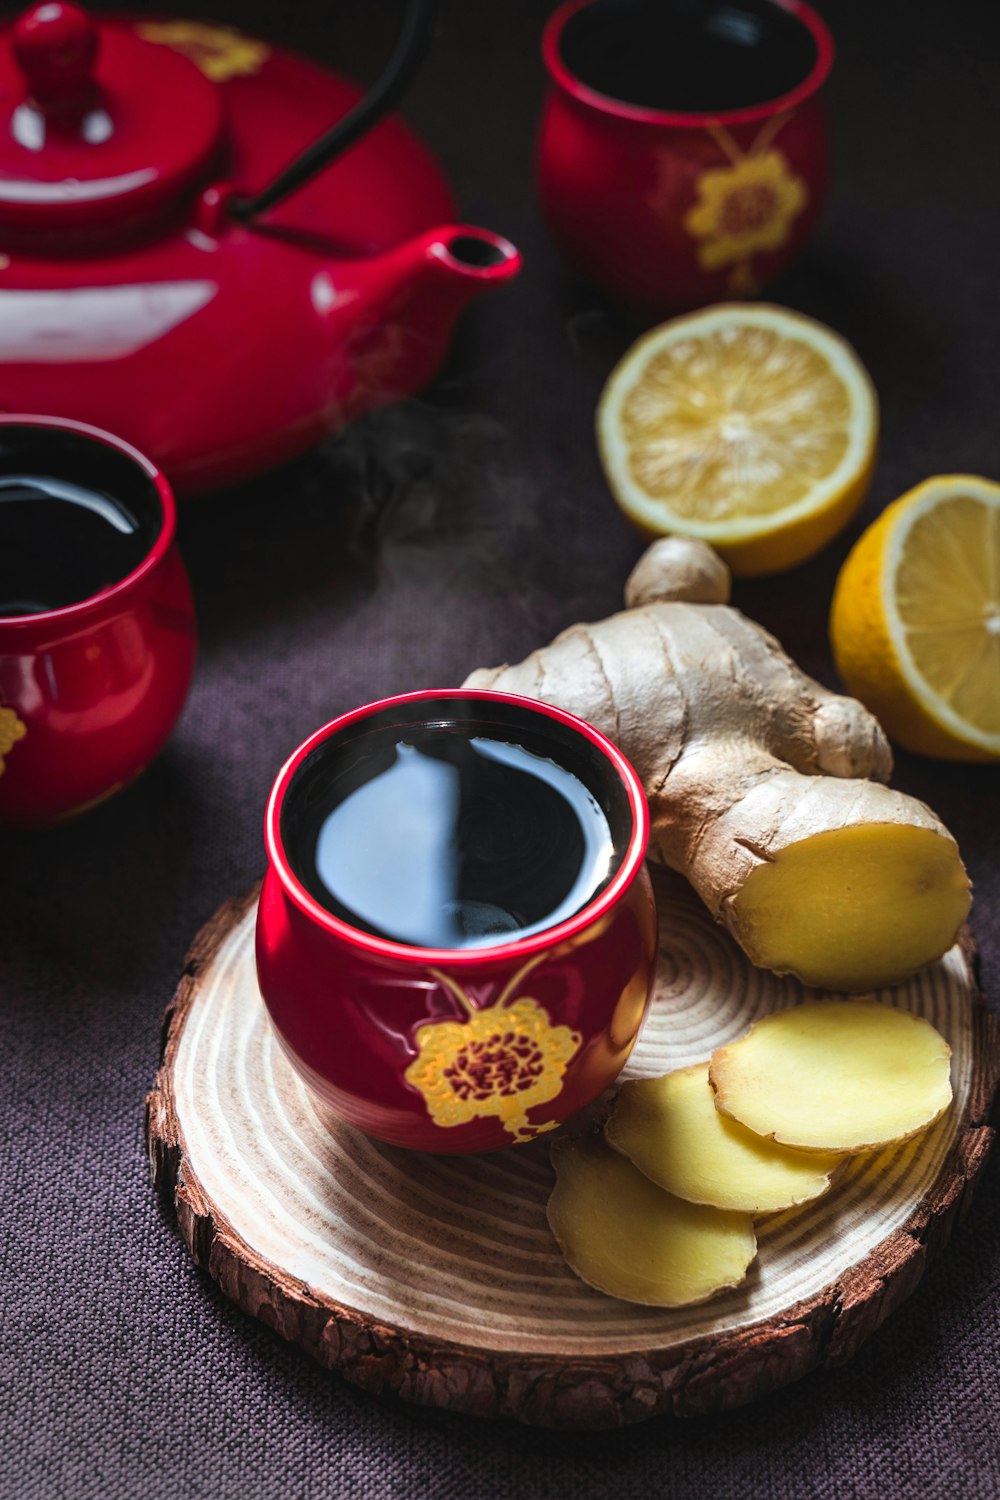 in Scheiben geschnittene Zitrone auf roter Keramikuntertasse neben rotem Keramikbecher mit schwarzer Flüssigkeit